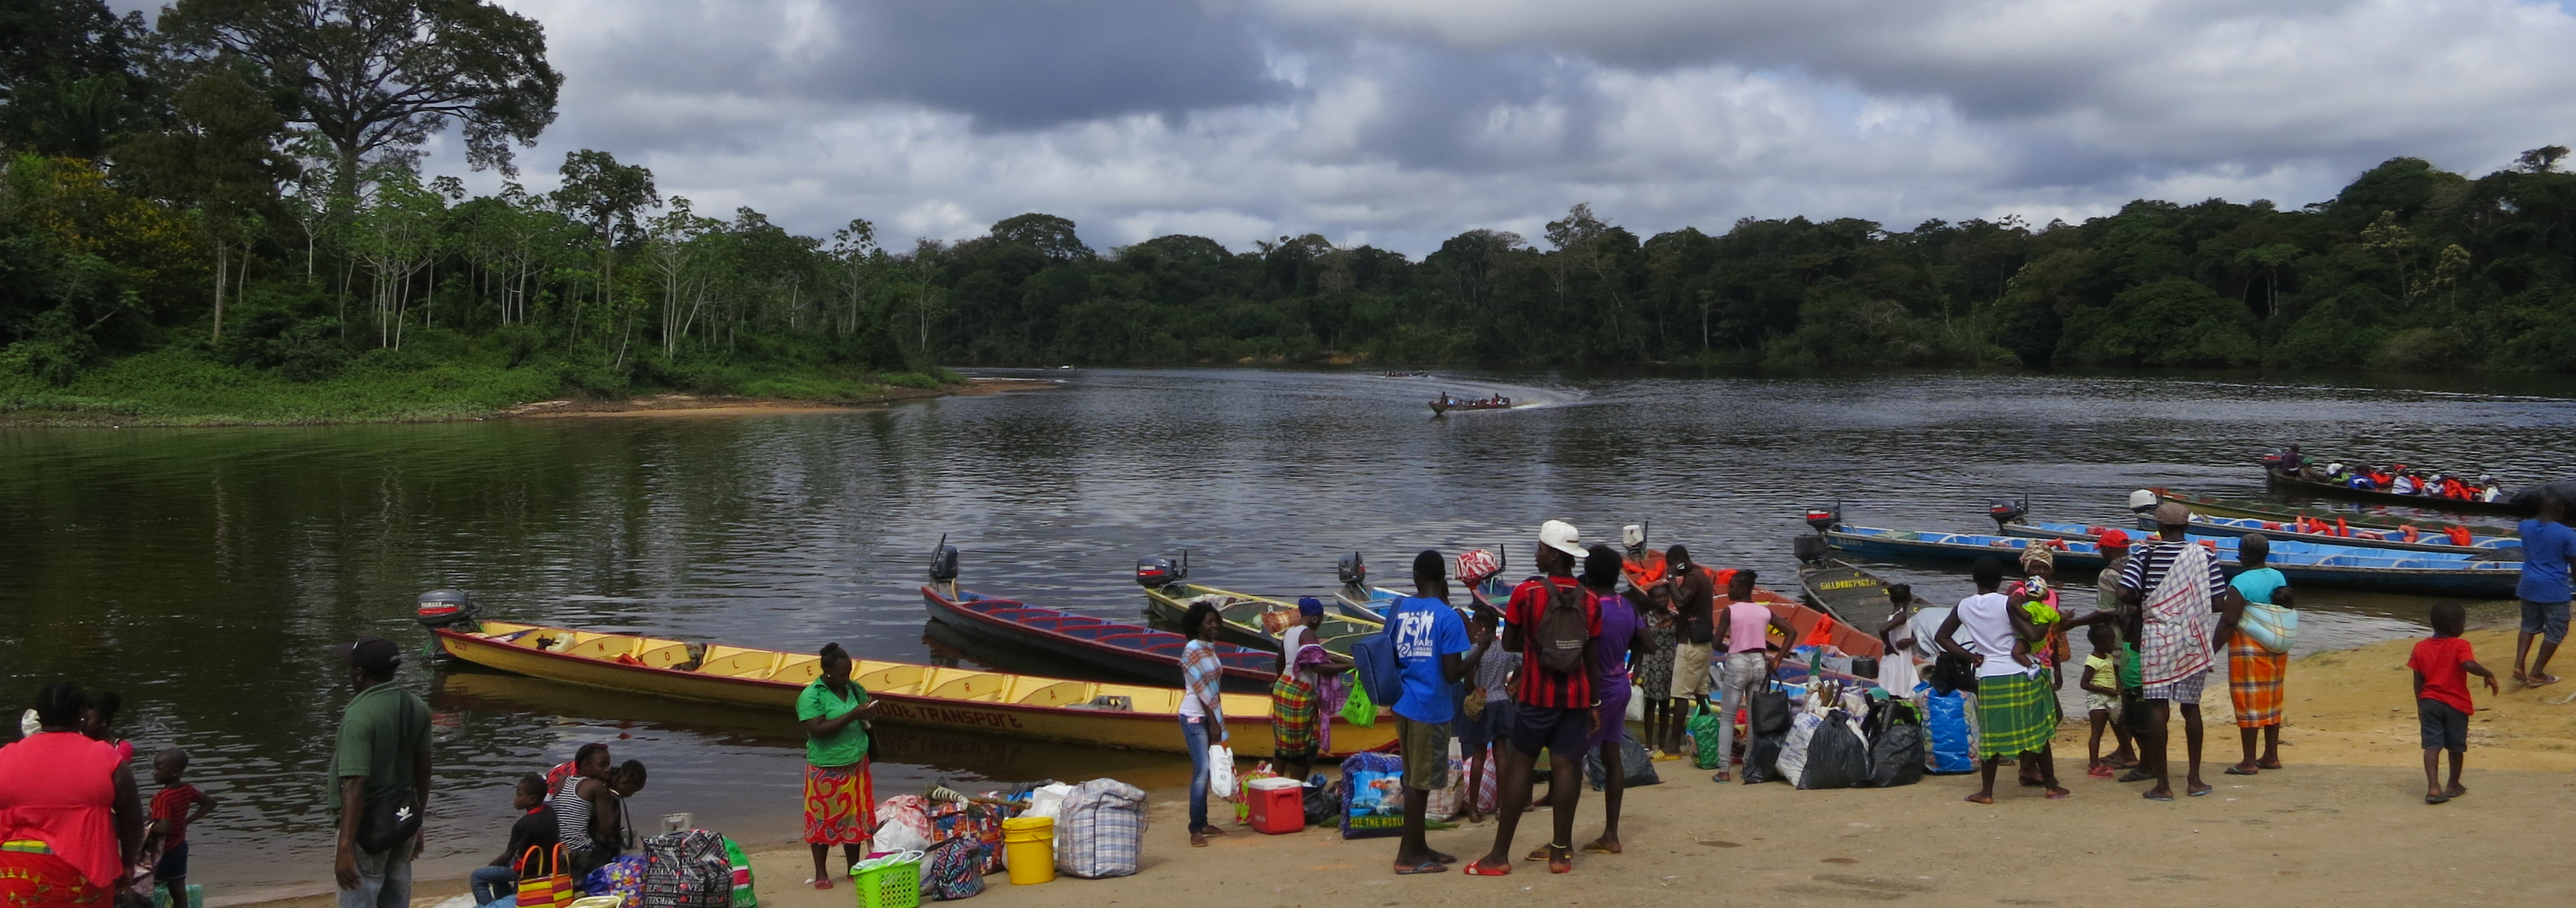 Bootsumschlagplatz in Atjoni für die Weiterreise auf dem oberen Surinamefluss in den Regenwald